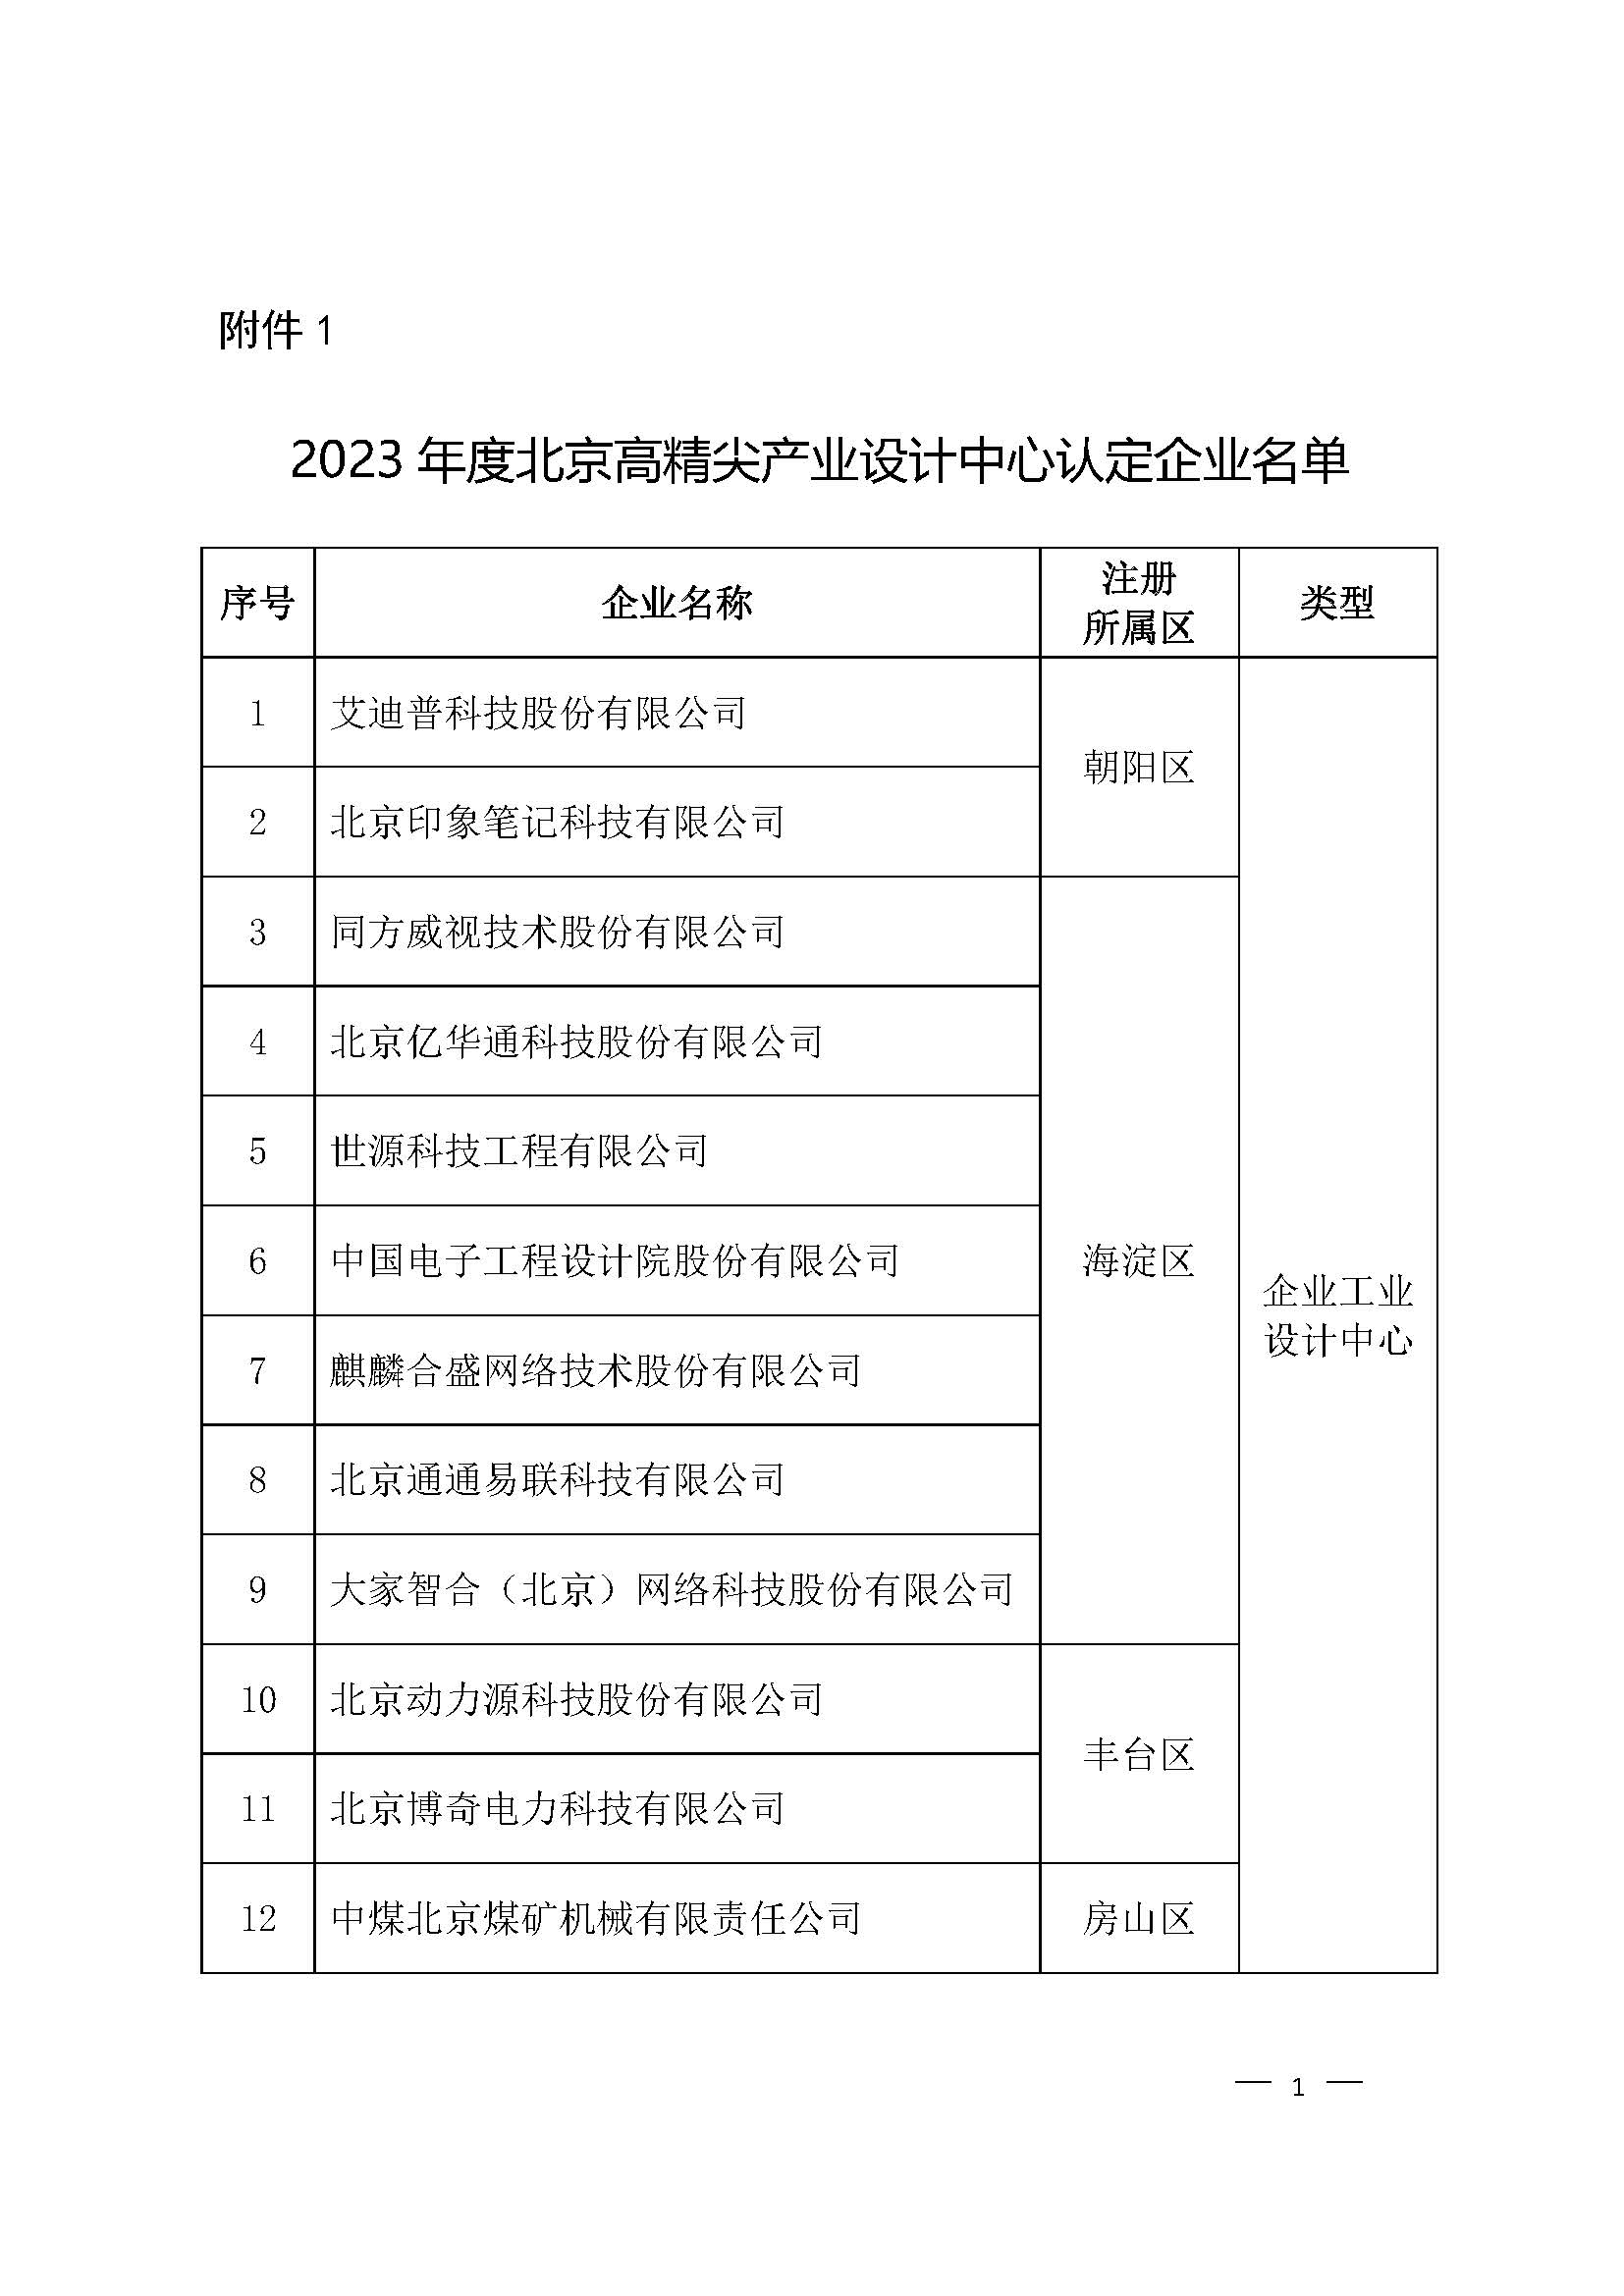 北京市高精尖产业设计中心认定名单